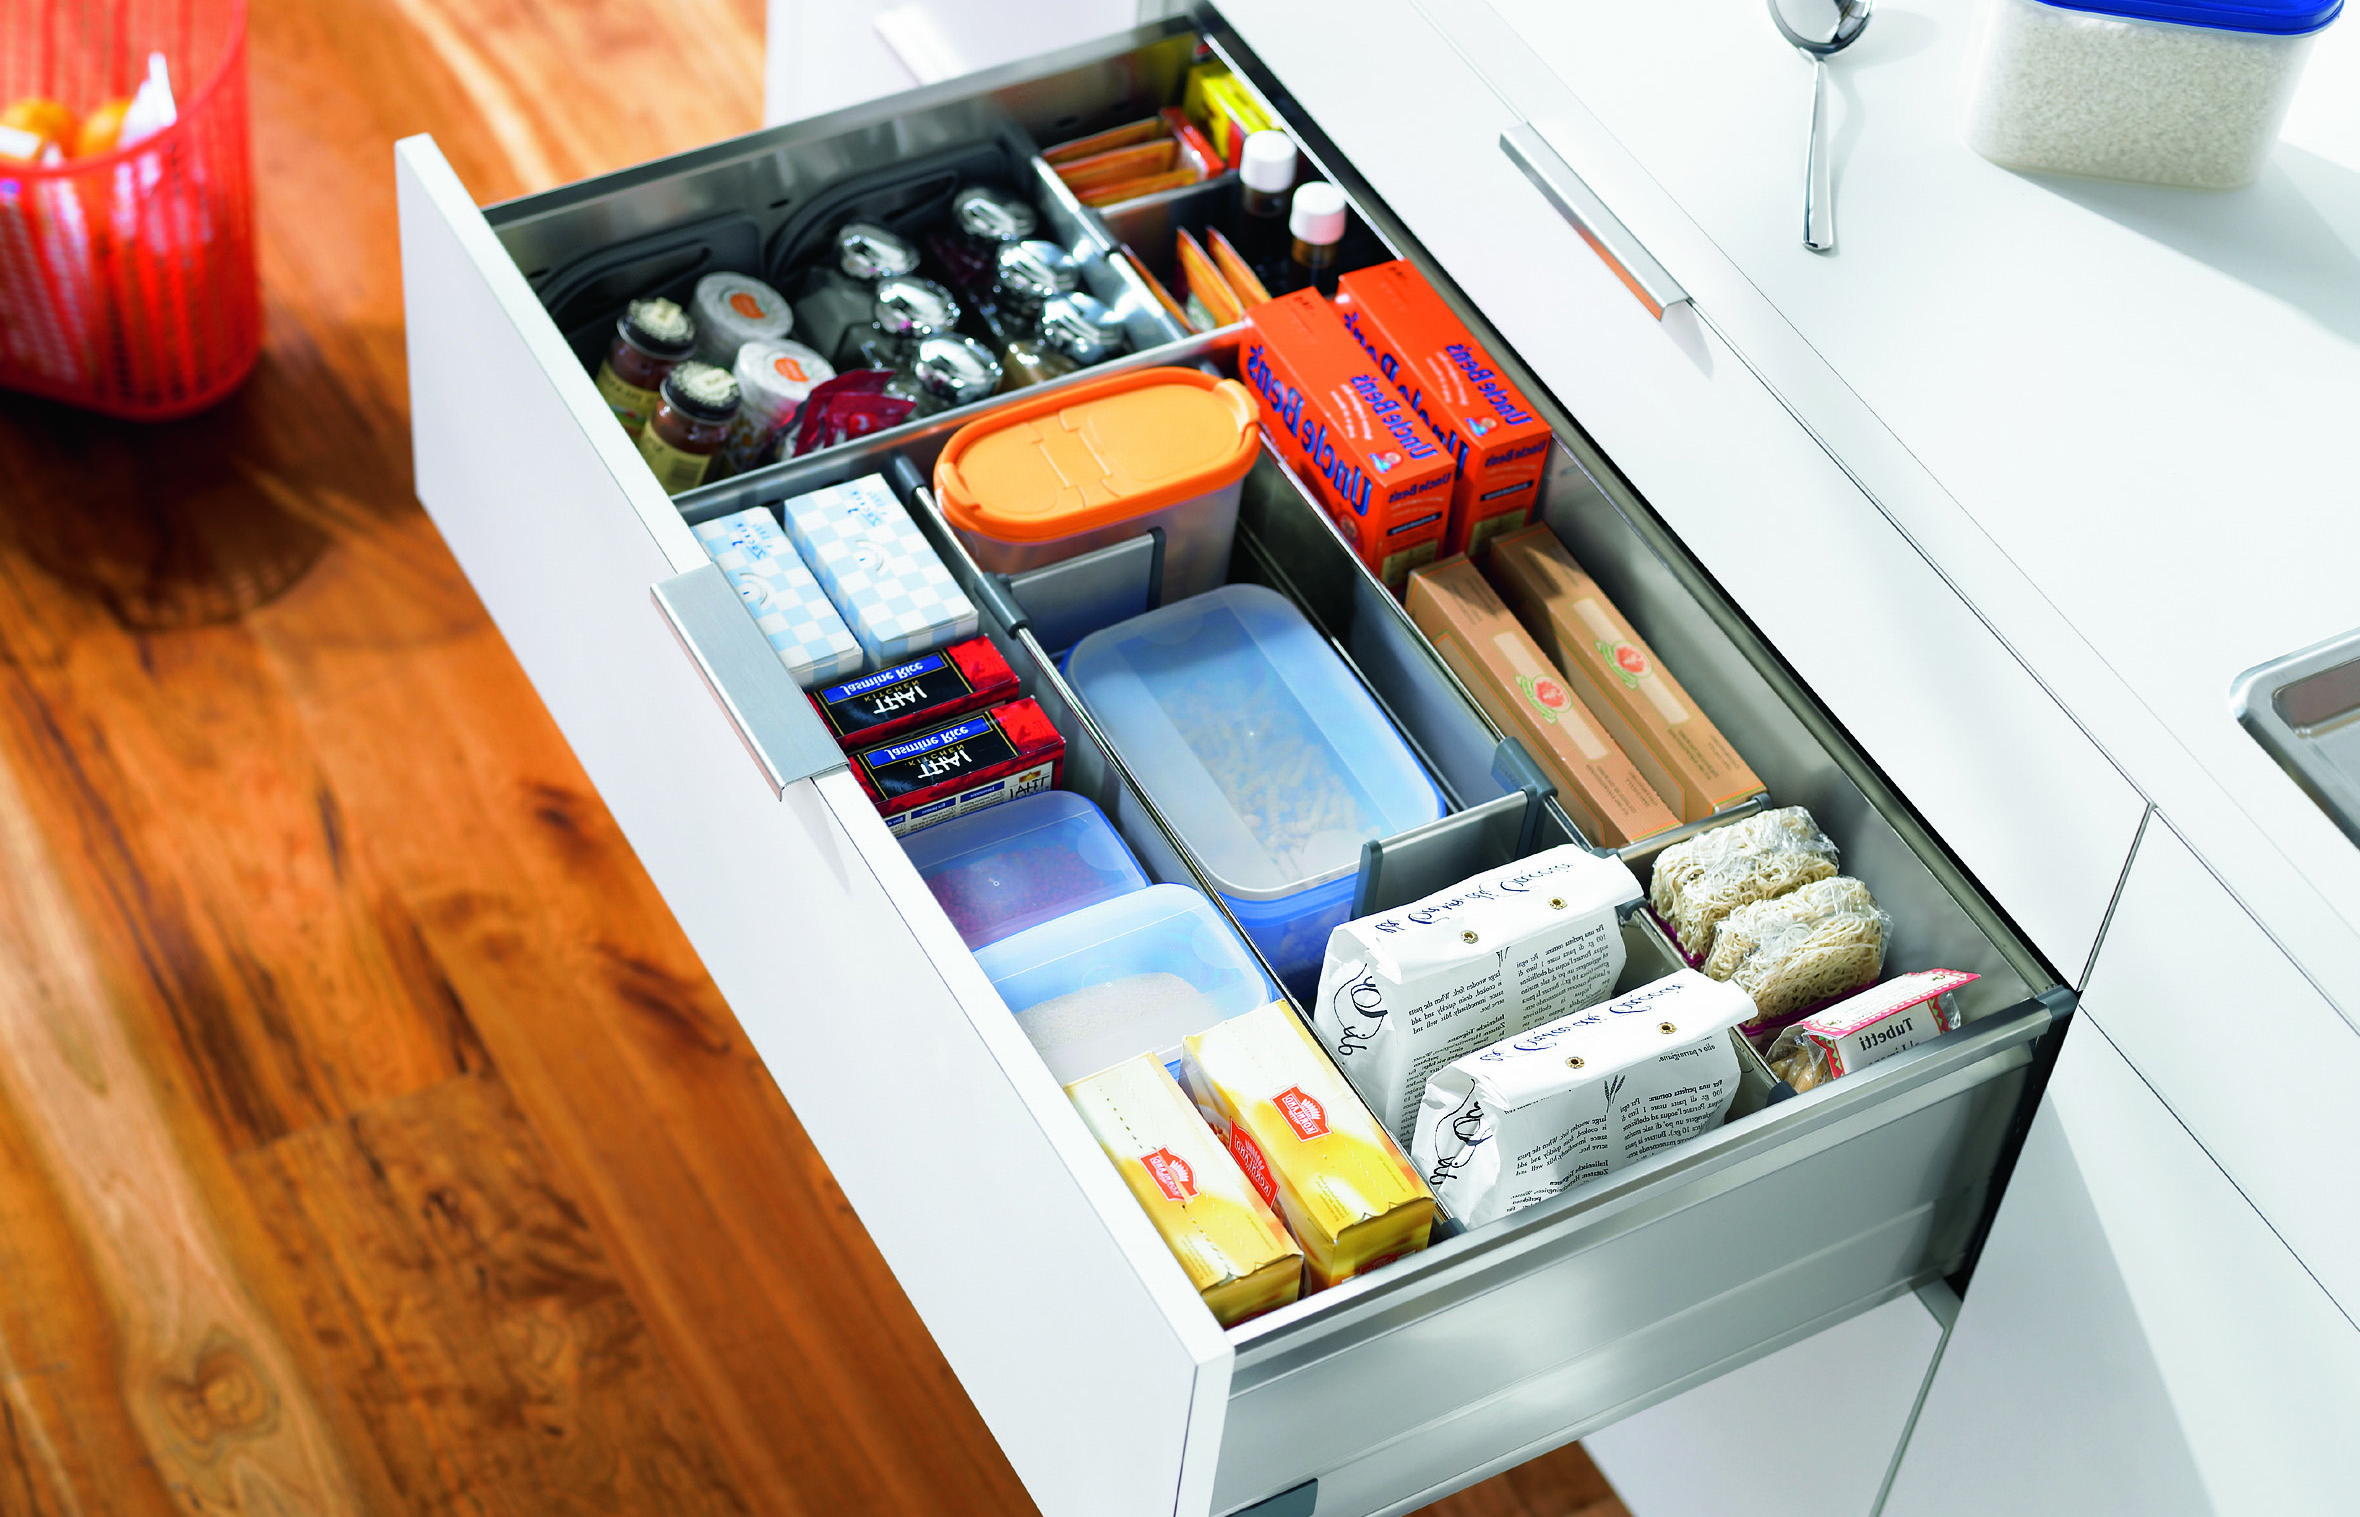 10 Шагов к идеальному порядку в кухонных шкафах